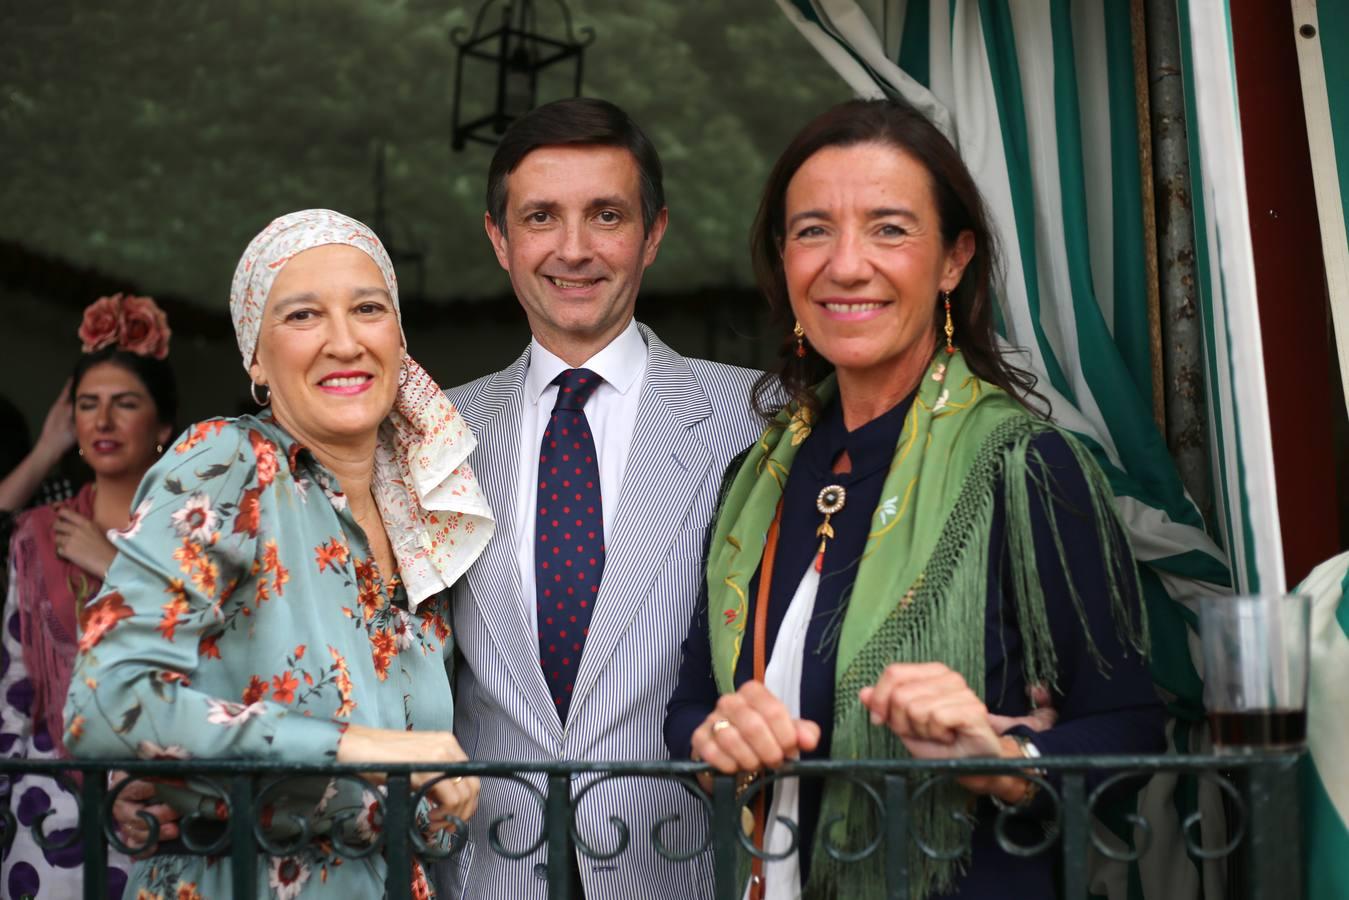 Clara Oropesa, Andrés de Haro y Sonia Jiménez Sánchez-Dalp